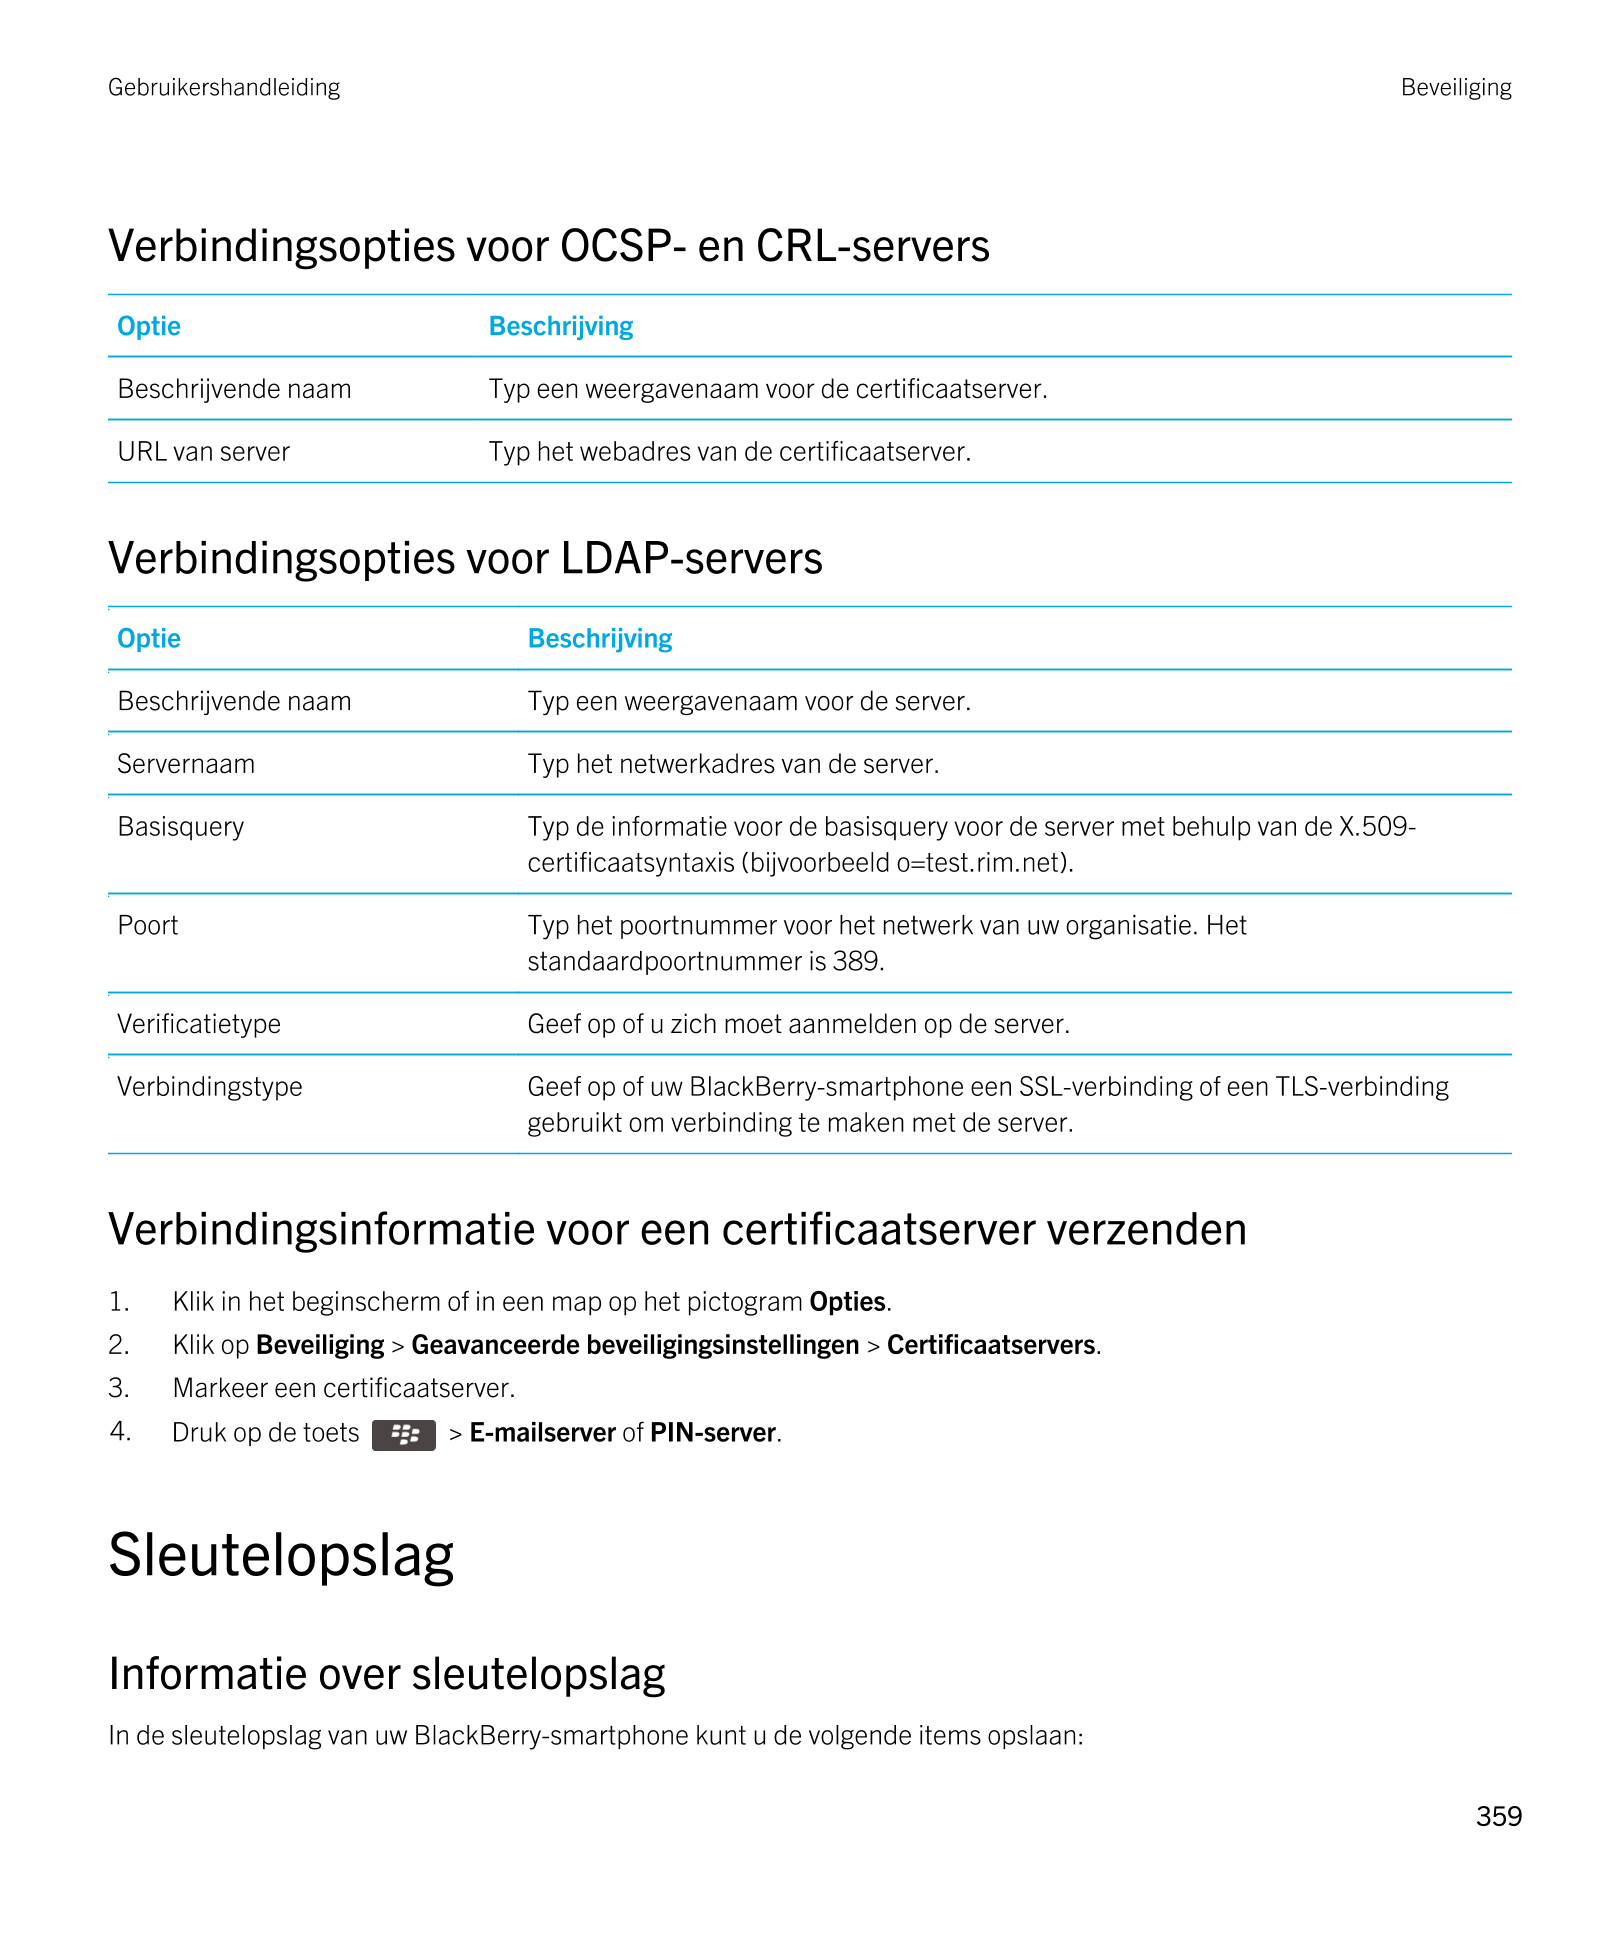 Gebruikershandleiding Beveiliging
Verbindingsopties voor OCSP- en CRL-servers
Optie Beschrijving
Beschrijvende naam Typ een weer